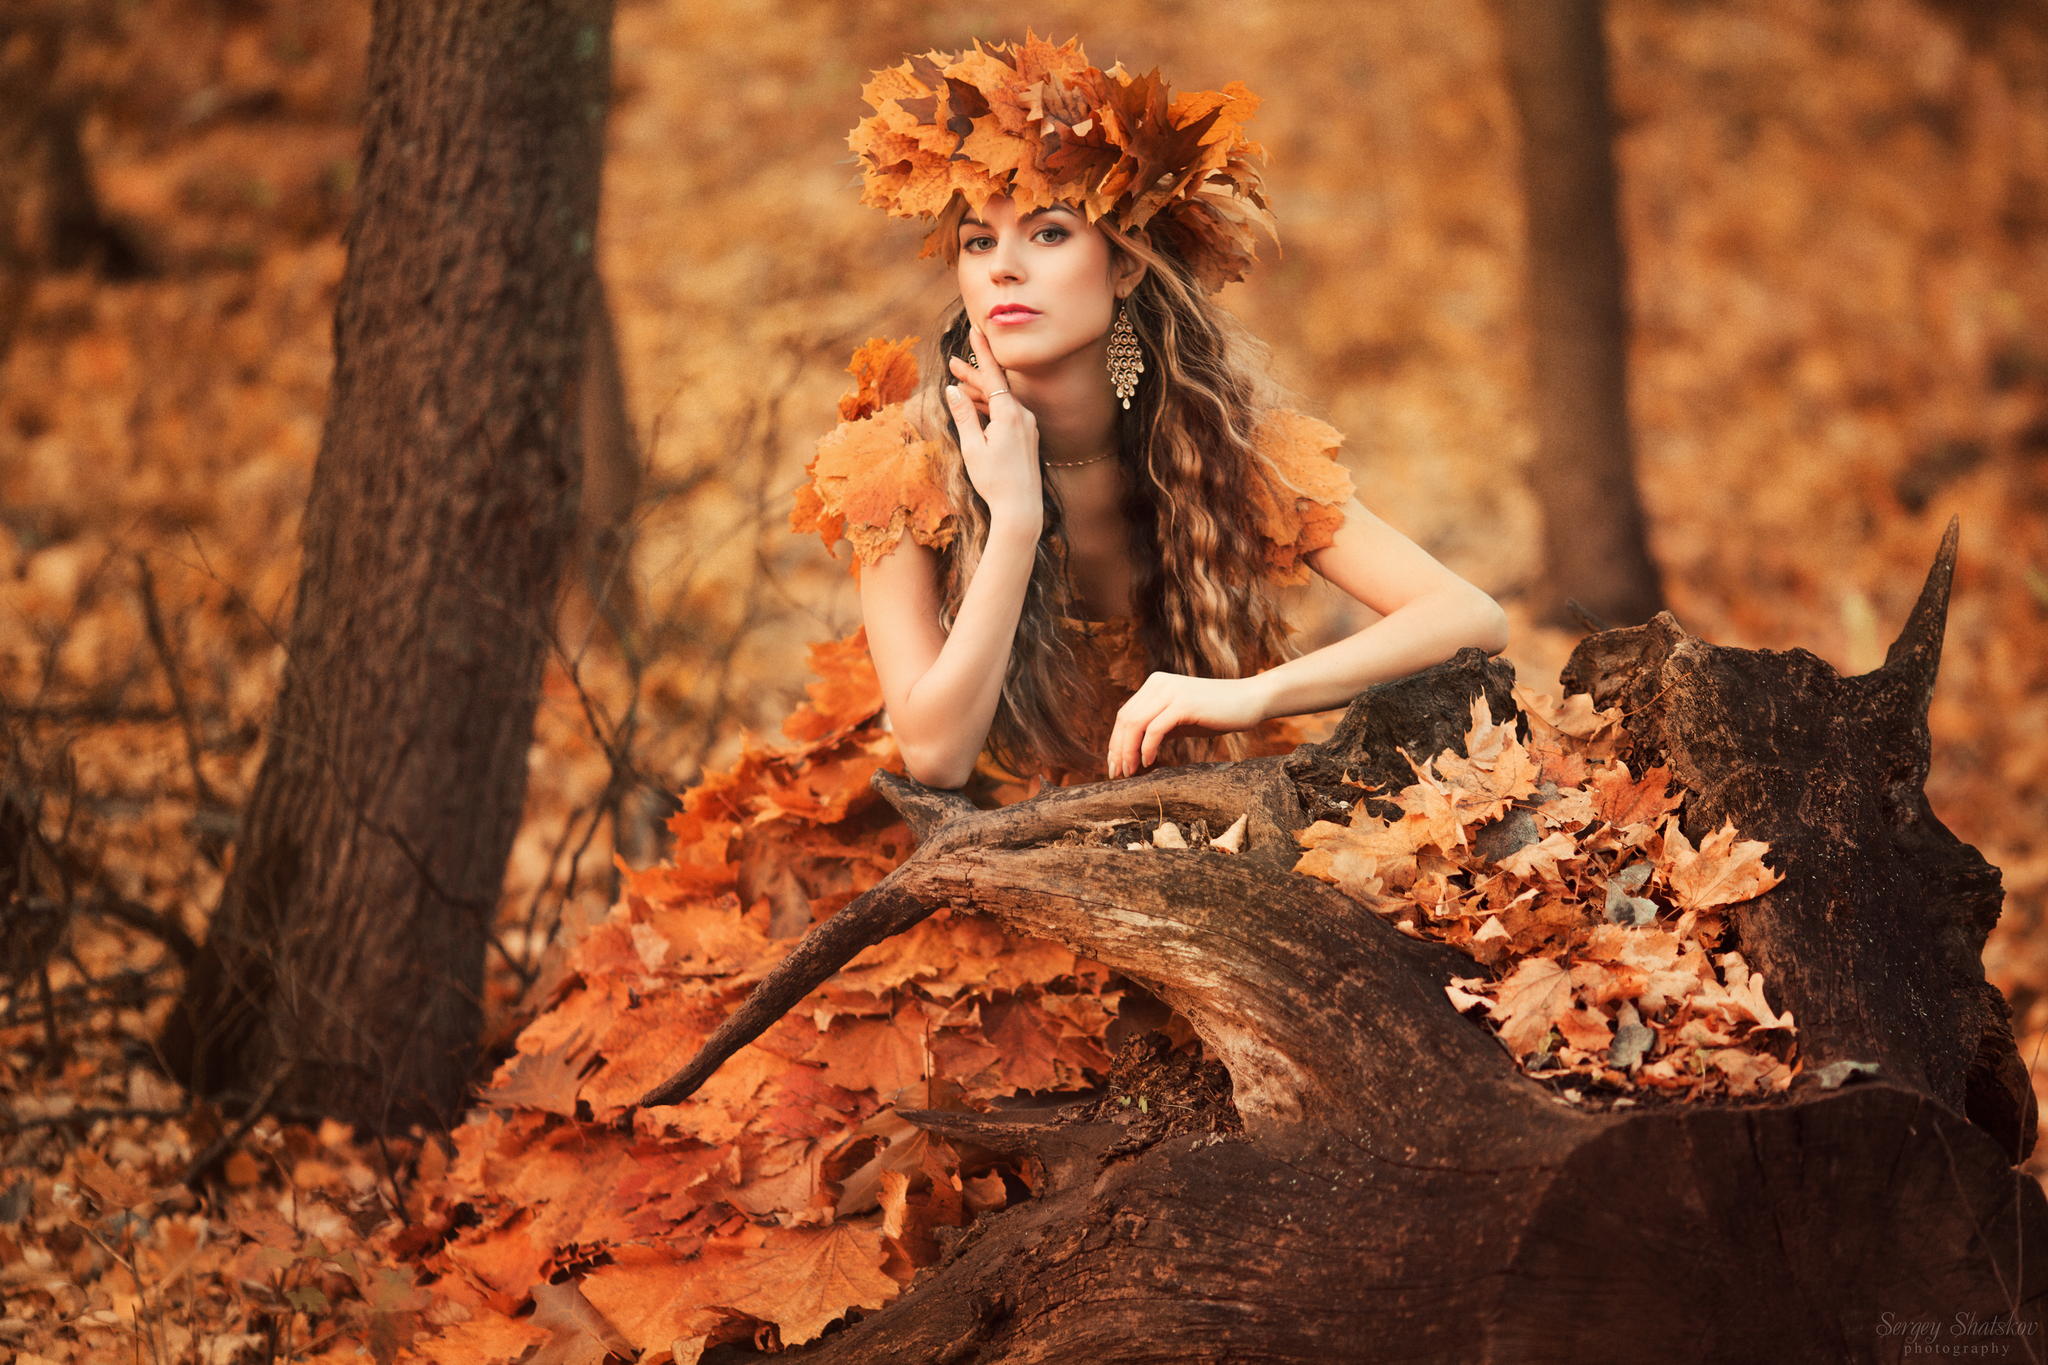  Девушка в осенней листве, фотограф Sergey Shatskov